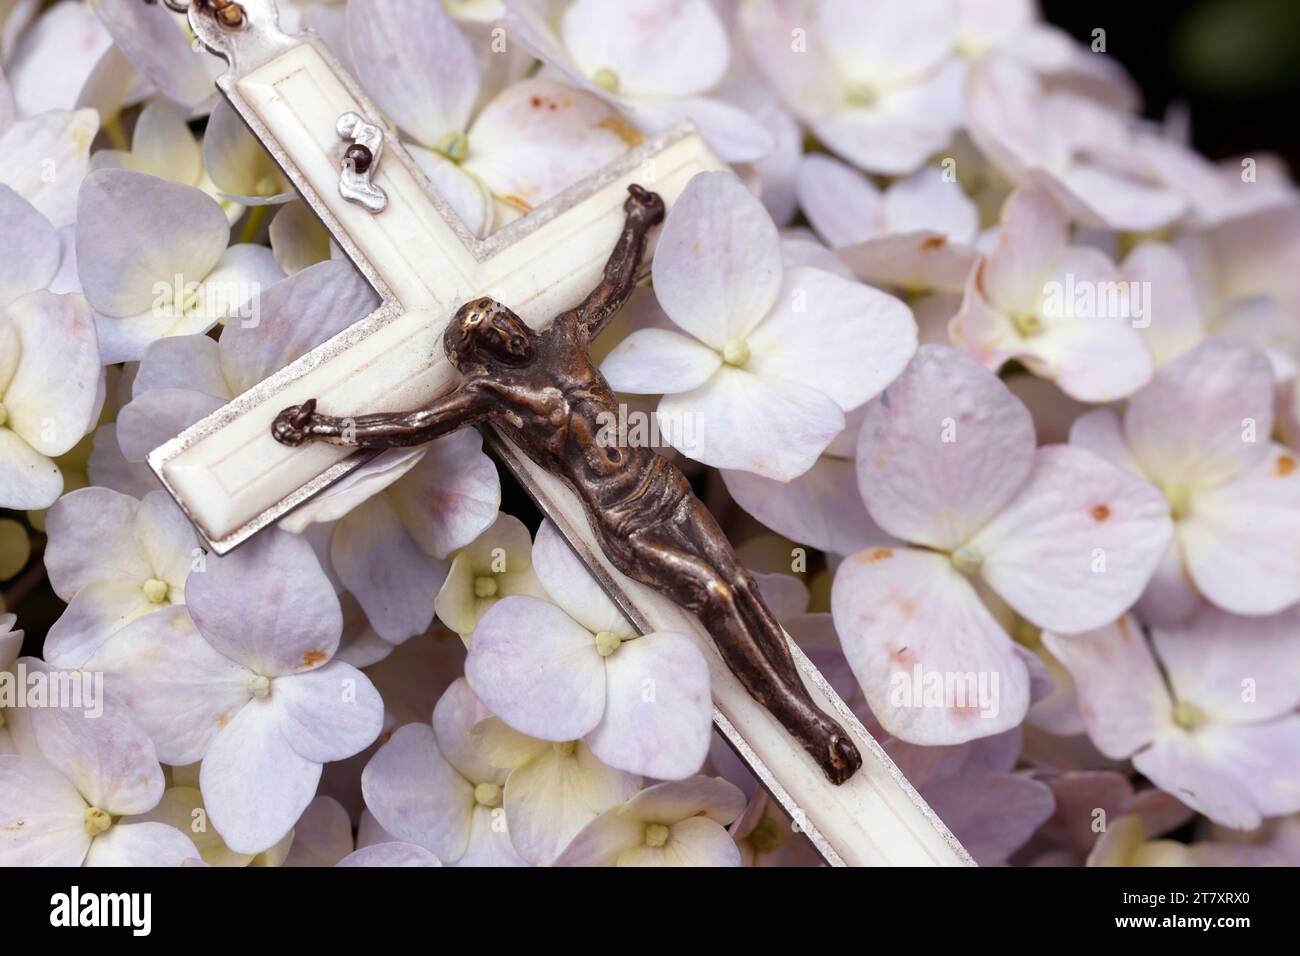 Gebet in der Natur, katholische Rosenkranzperlen mit Jesus auf Hortensie Blume, Vietnam, Indochina, Südostasien, Asien Stockfoto